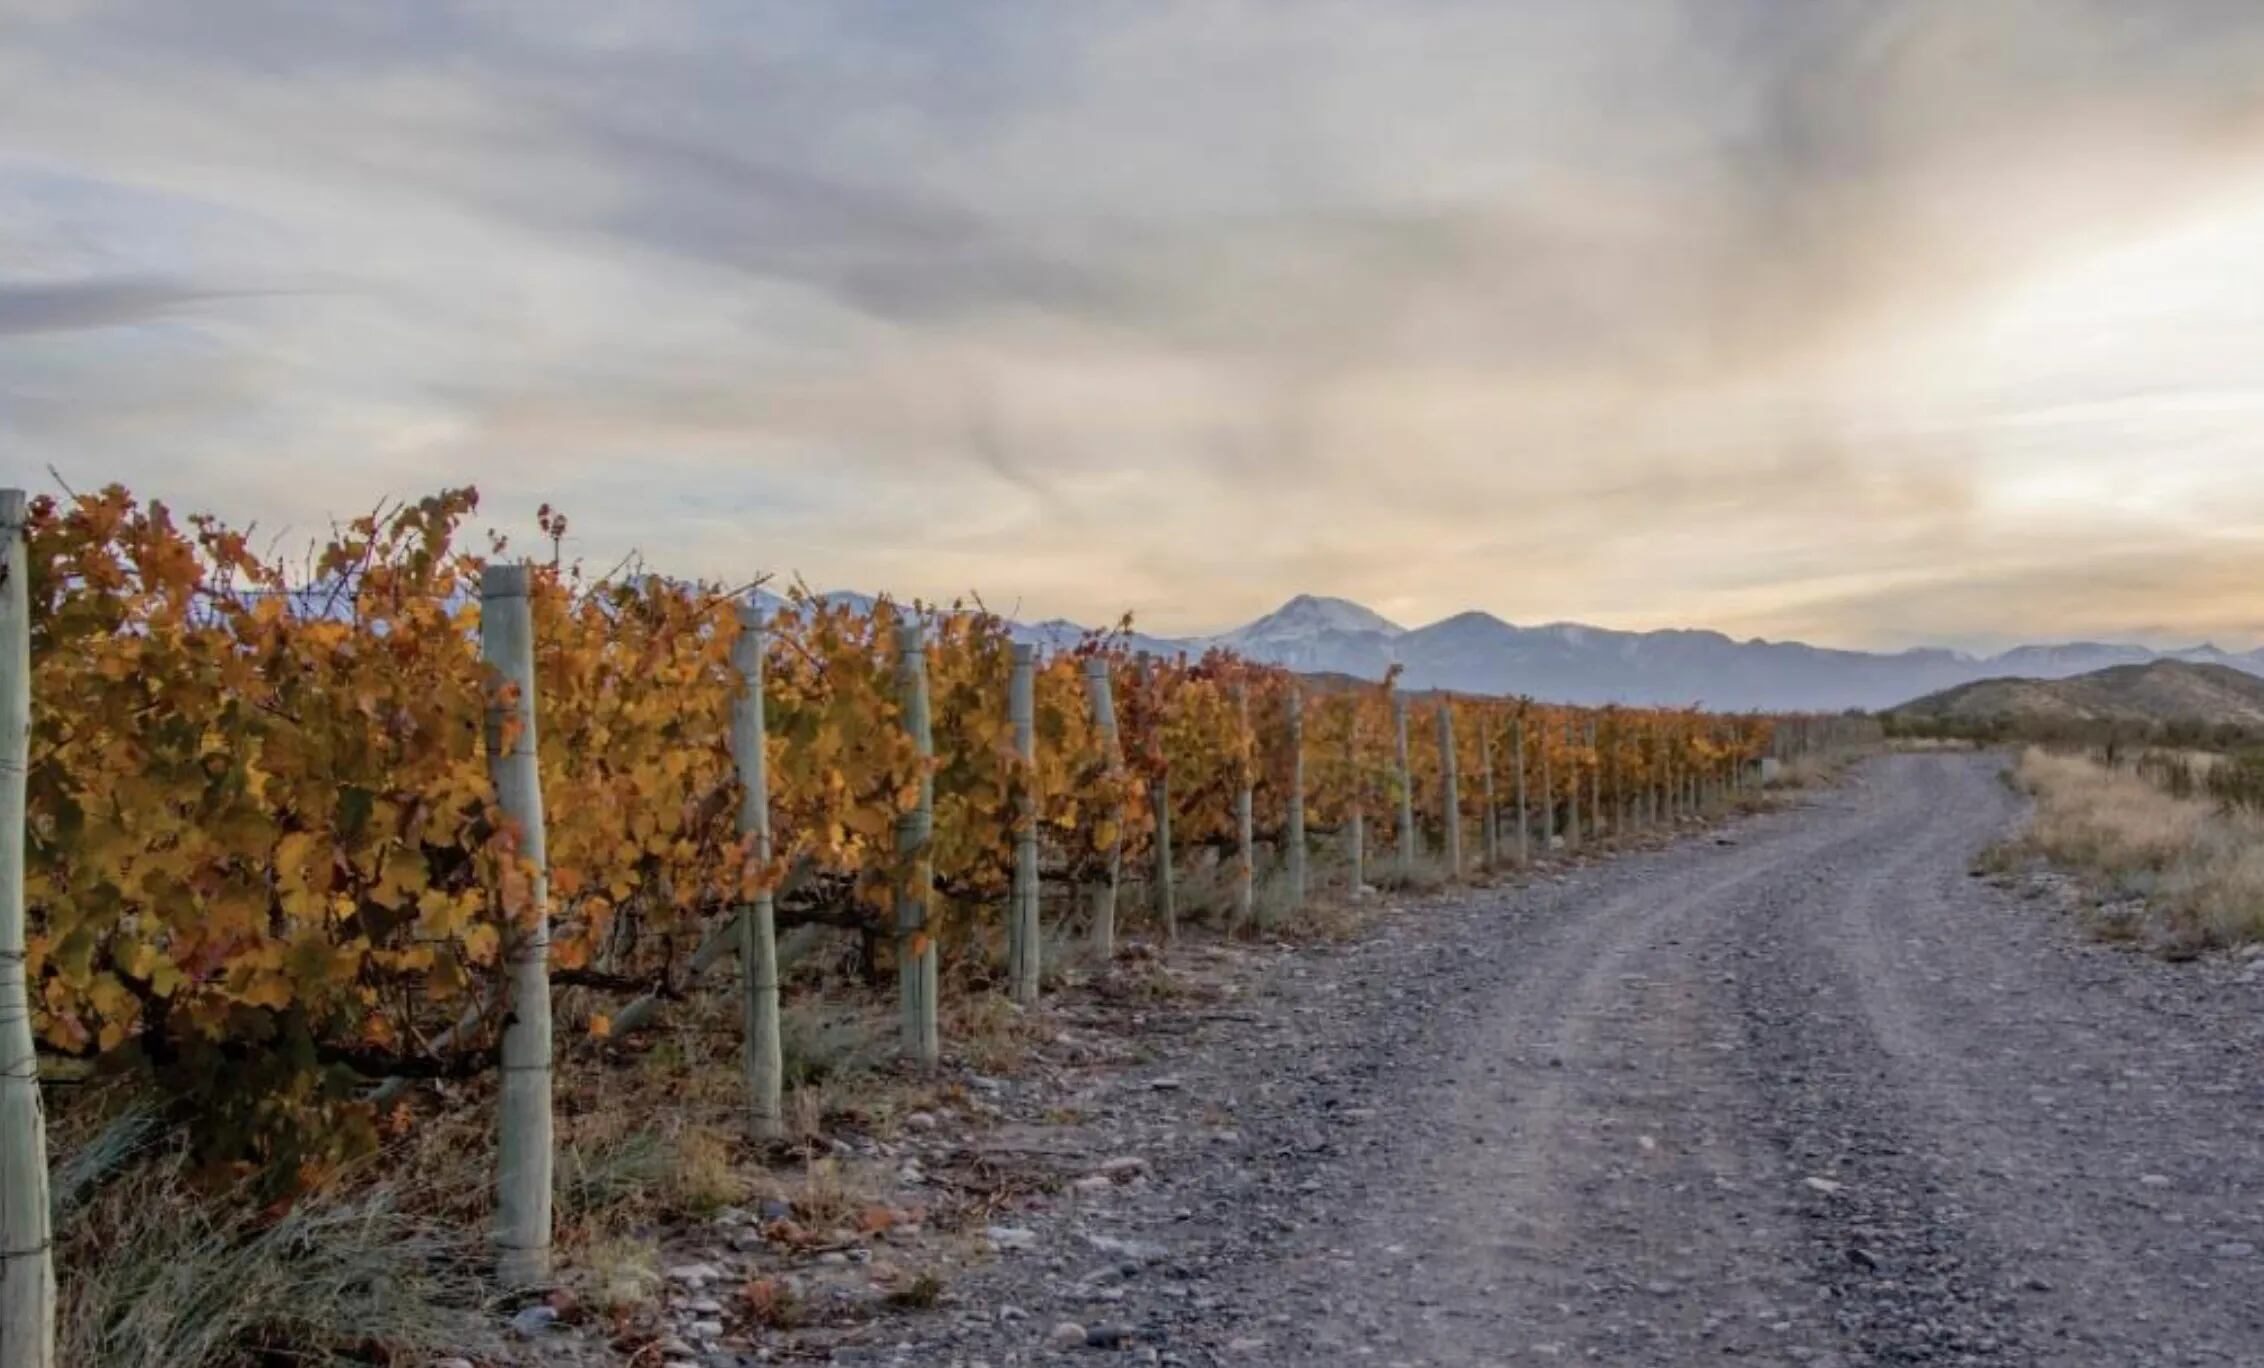 Mejores precios para el productor y cosecha más baja: el panorama del mundo del vino